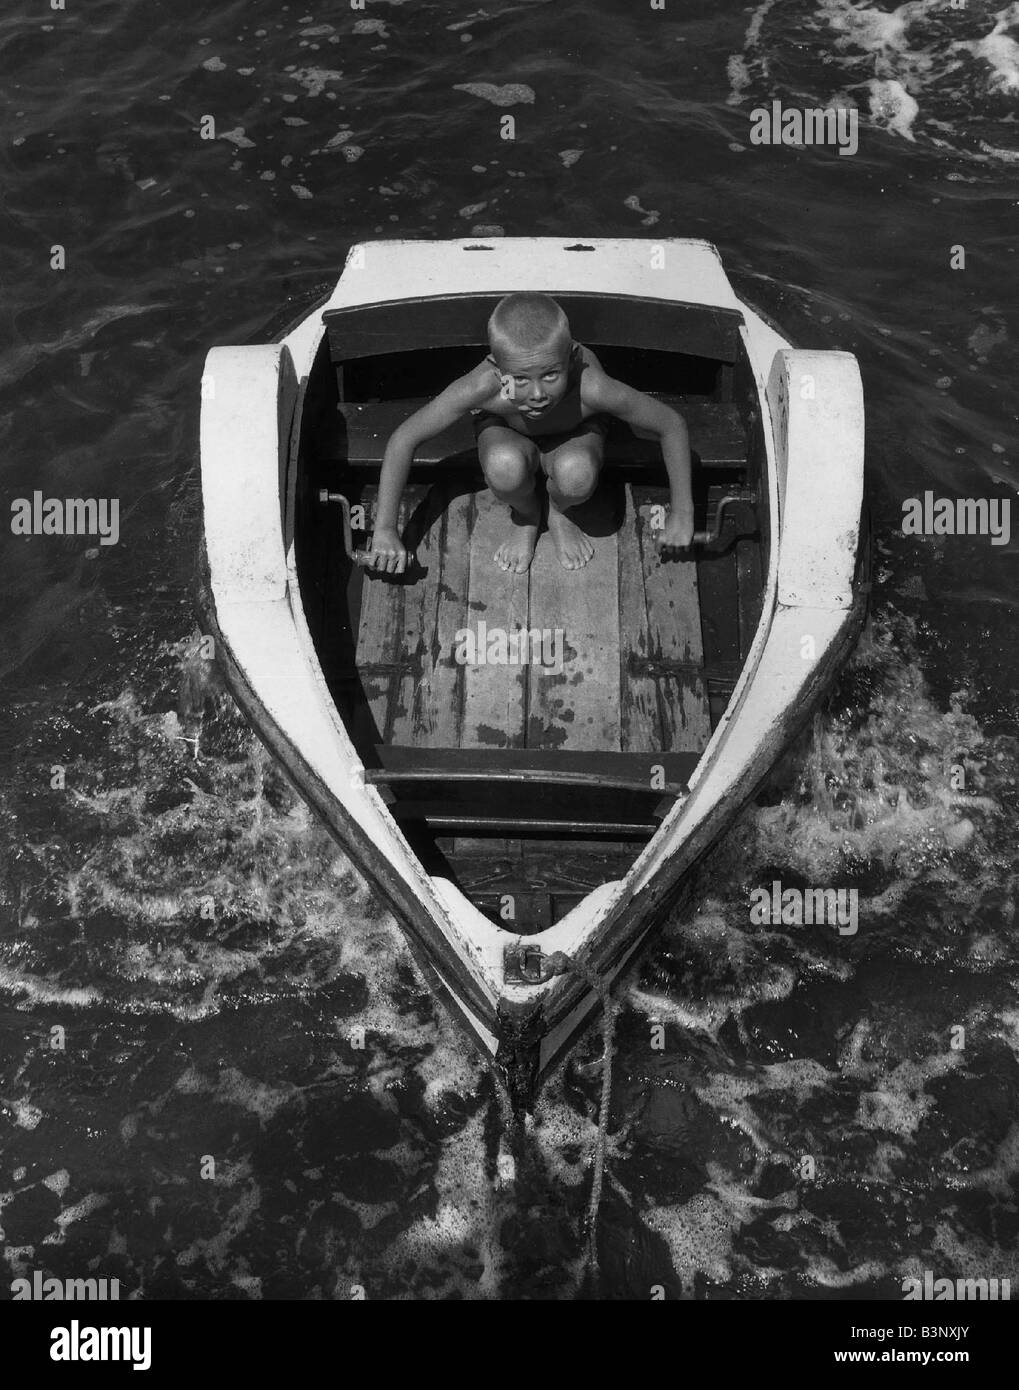 Junge kleine Keith aus Chelmsford Segel entfernt in seinem Paddel Boot Urlaub Urlaub Meer Meer Kindheit kleben Zunge August 1963 AfairScenes Stockfoto